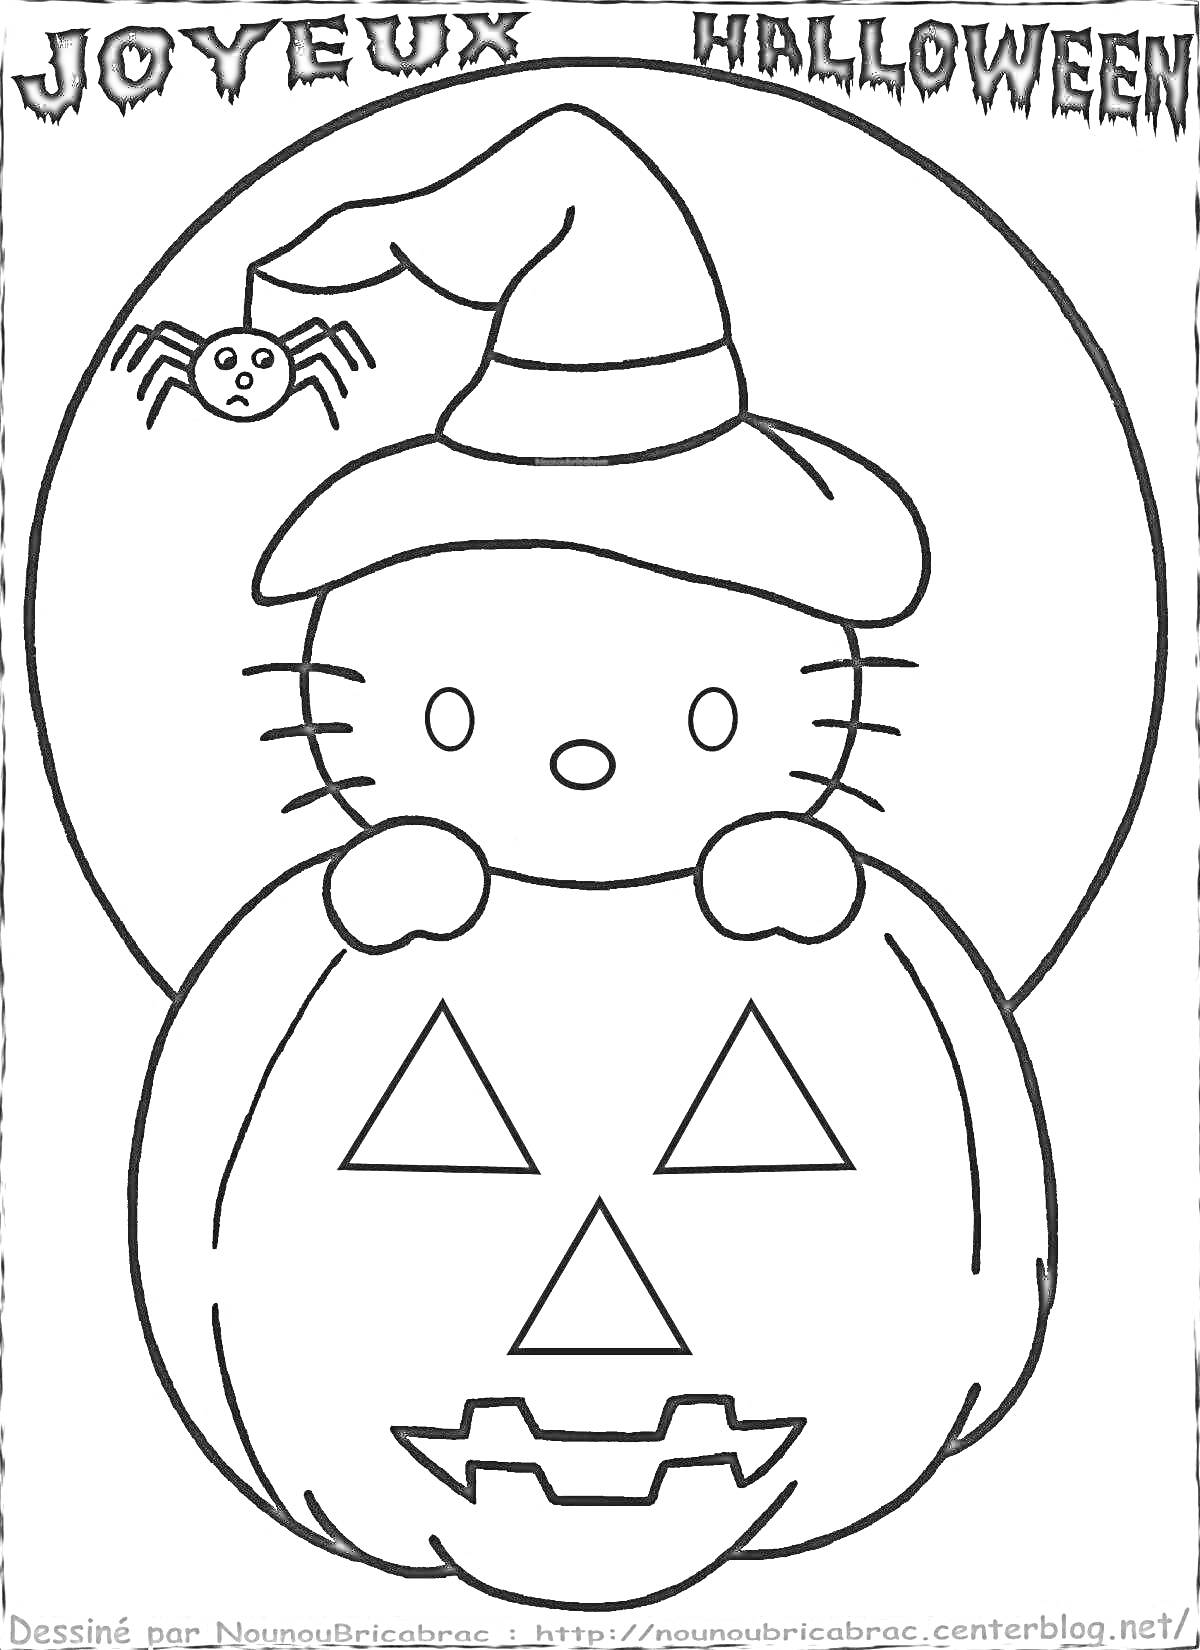 Раскраска Хэллоуин Китти с тыквой-фонариком, паук и шляпа ведьмы